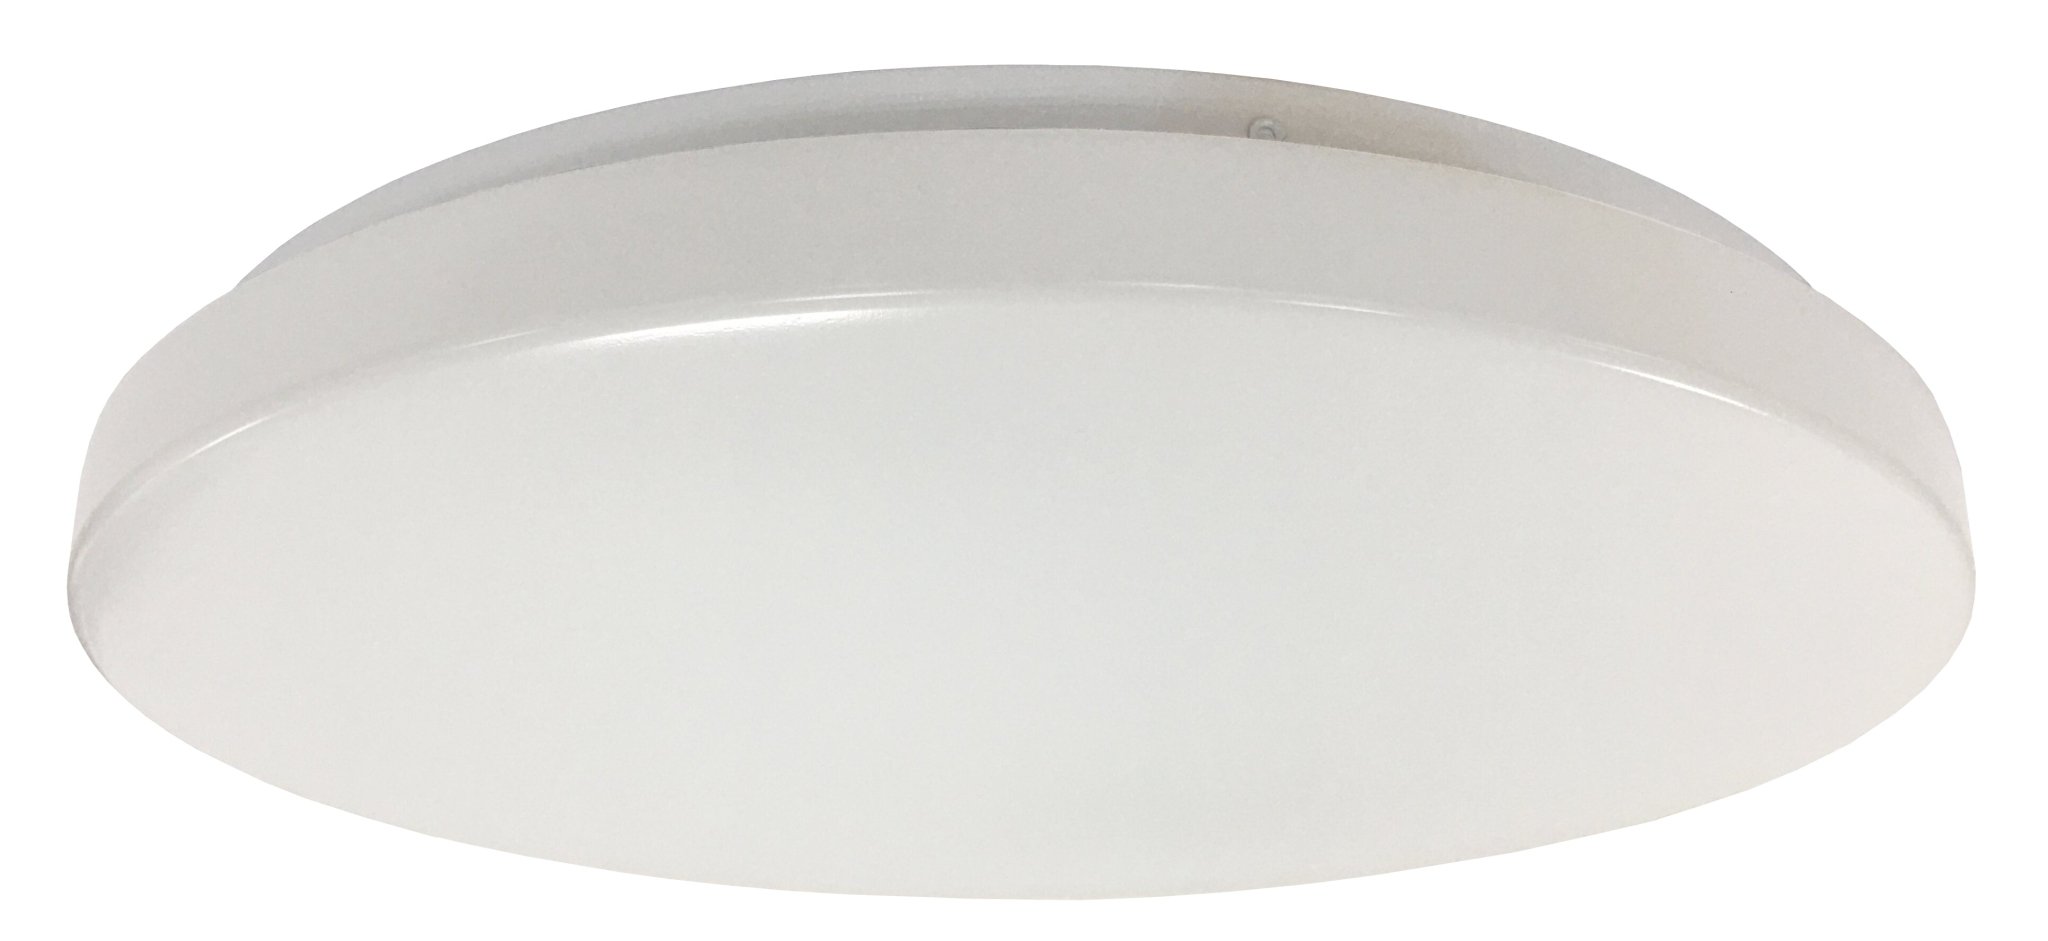 Orbit LED Oyster Light Tricolour in White 24w - Mases LightingMartec